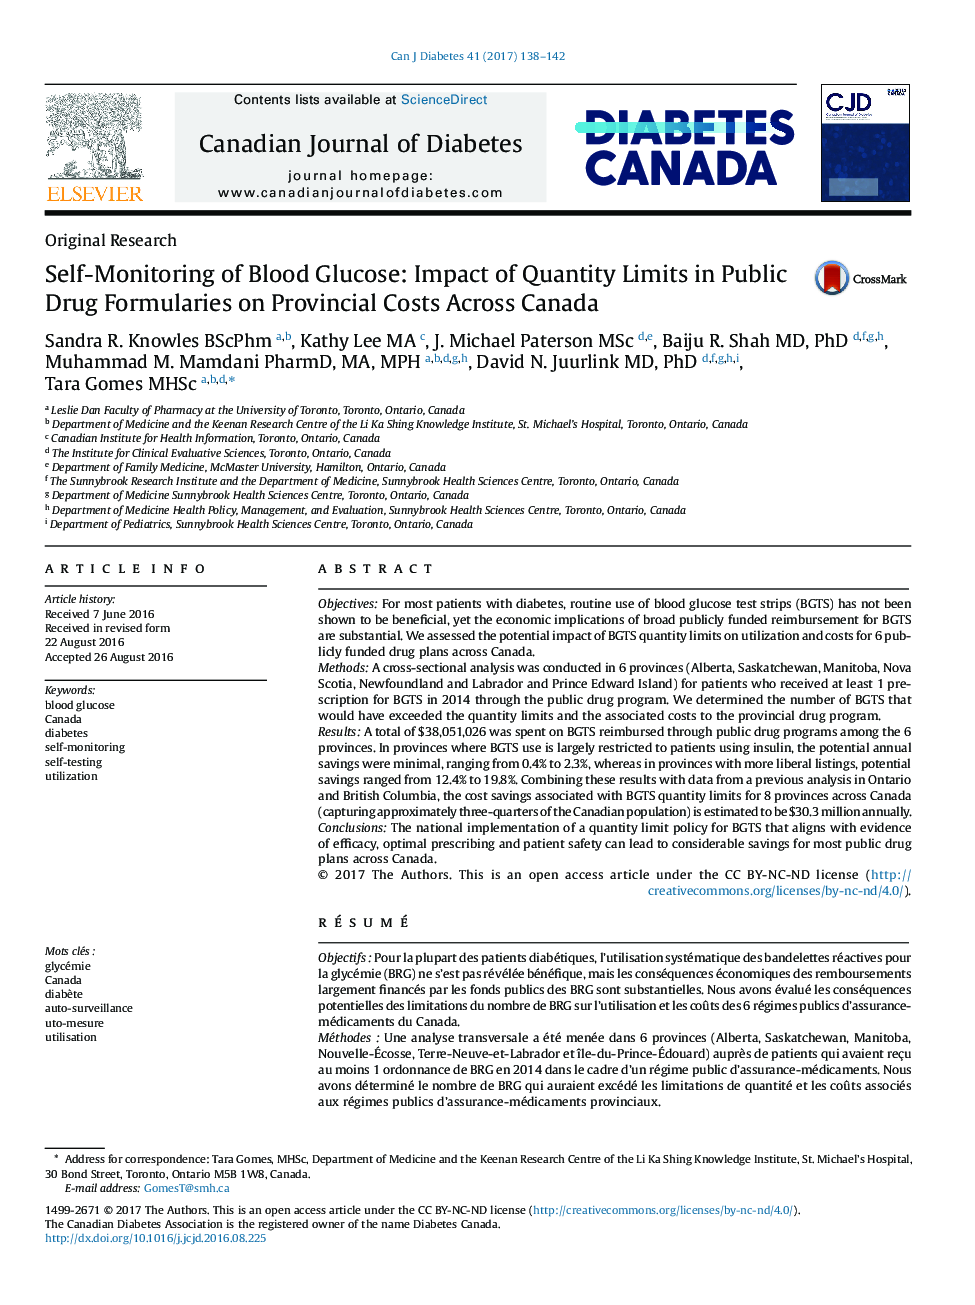 خودمراقبتی از گلوکز خون: تاثیر محدودیتهای موجود در فرمول های عمومی دارو بر هزینه های استان در سراسر کانادا 